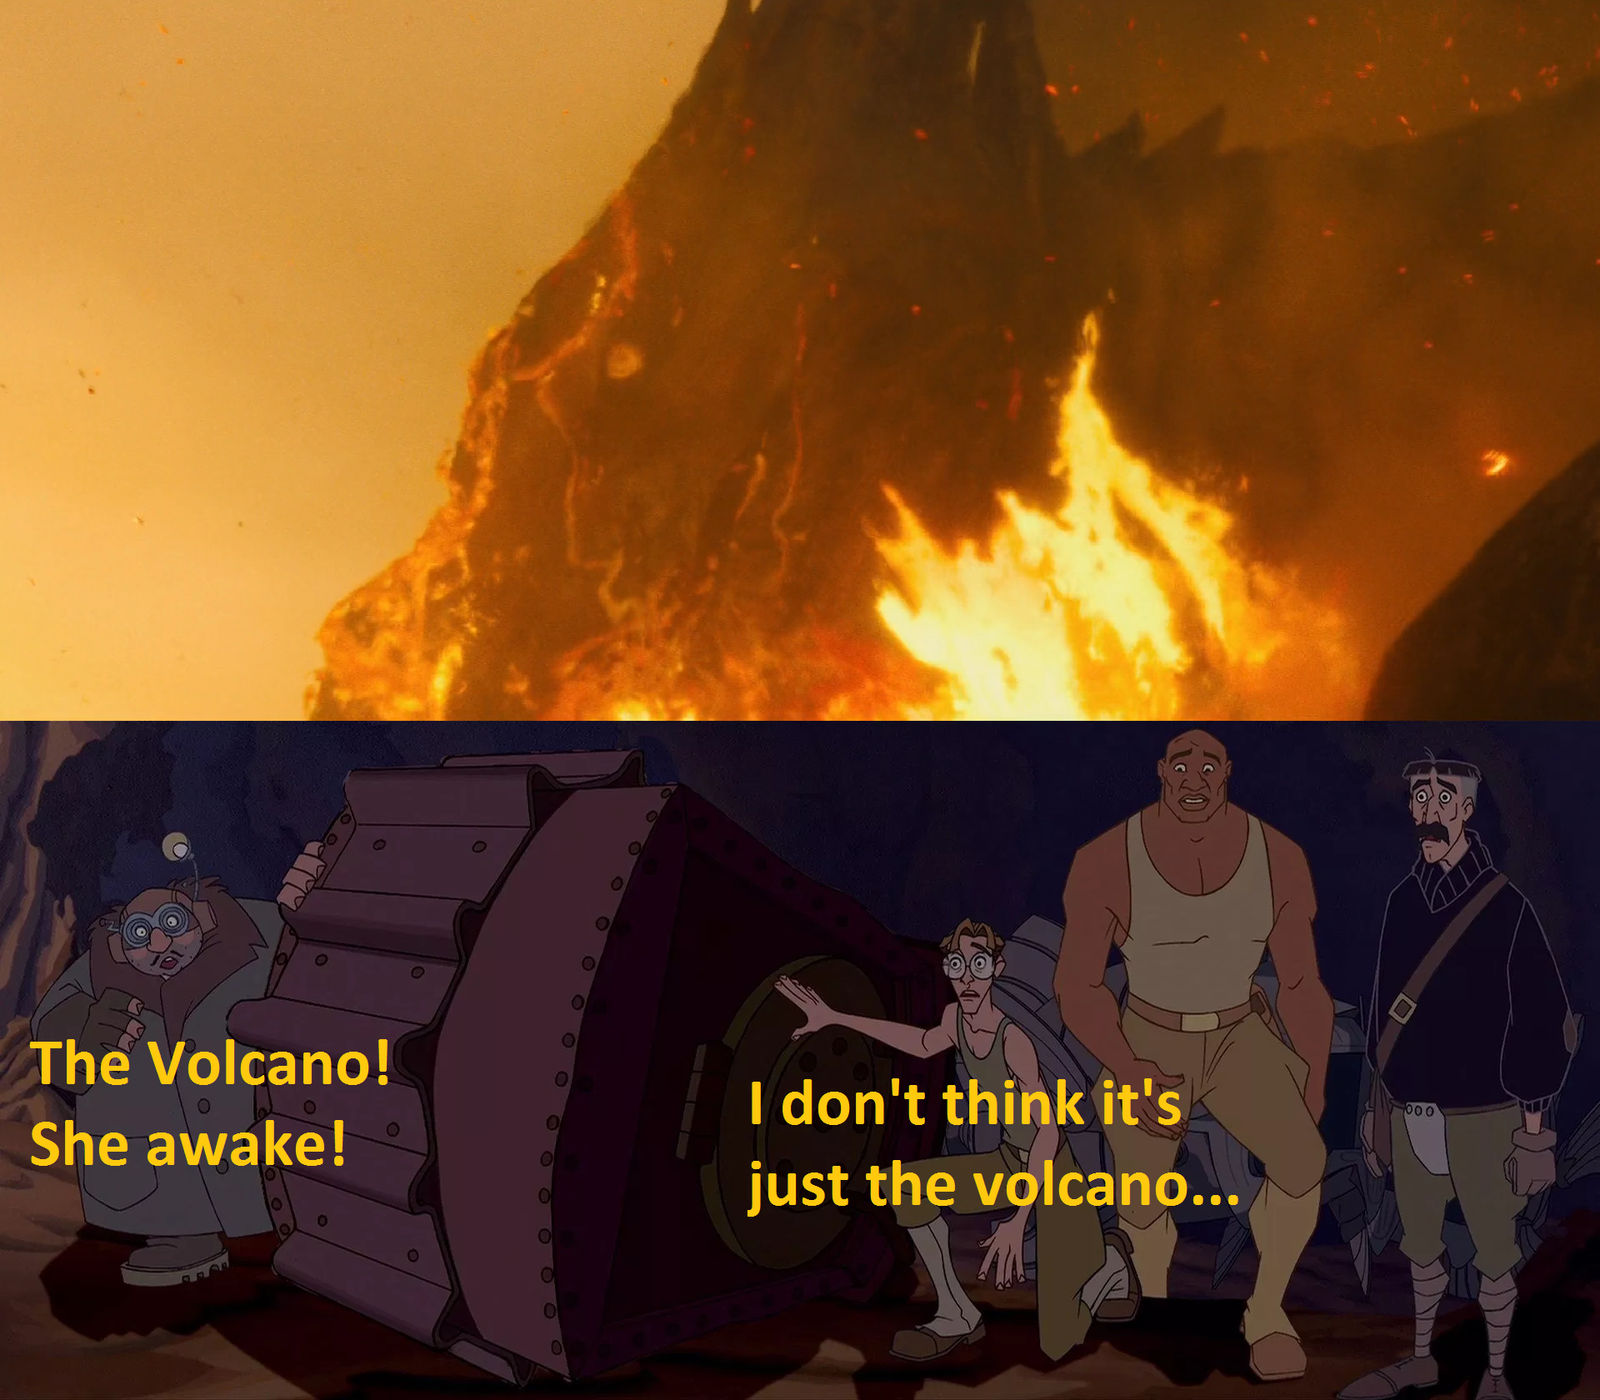 The Volcano Has Awaken! by MnstrFrc on DeviantArt